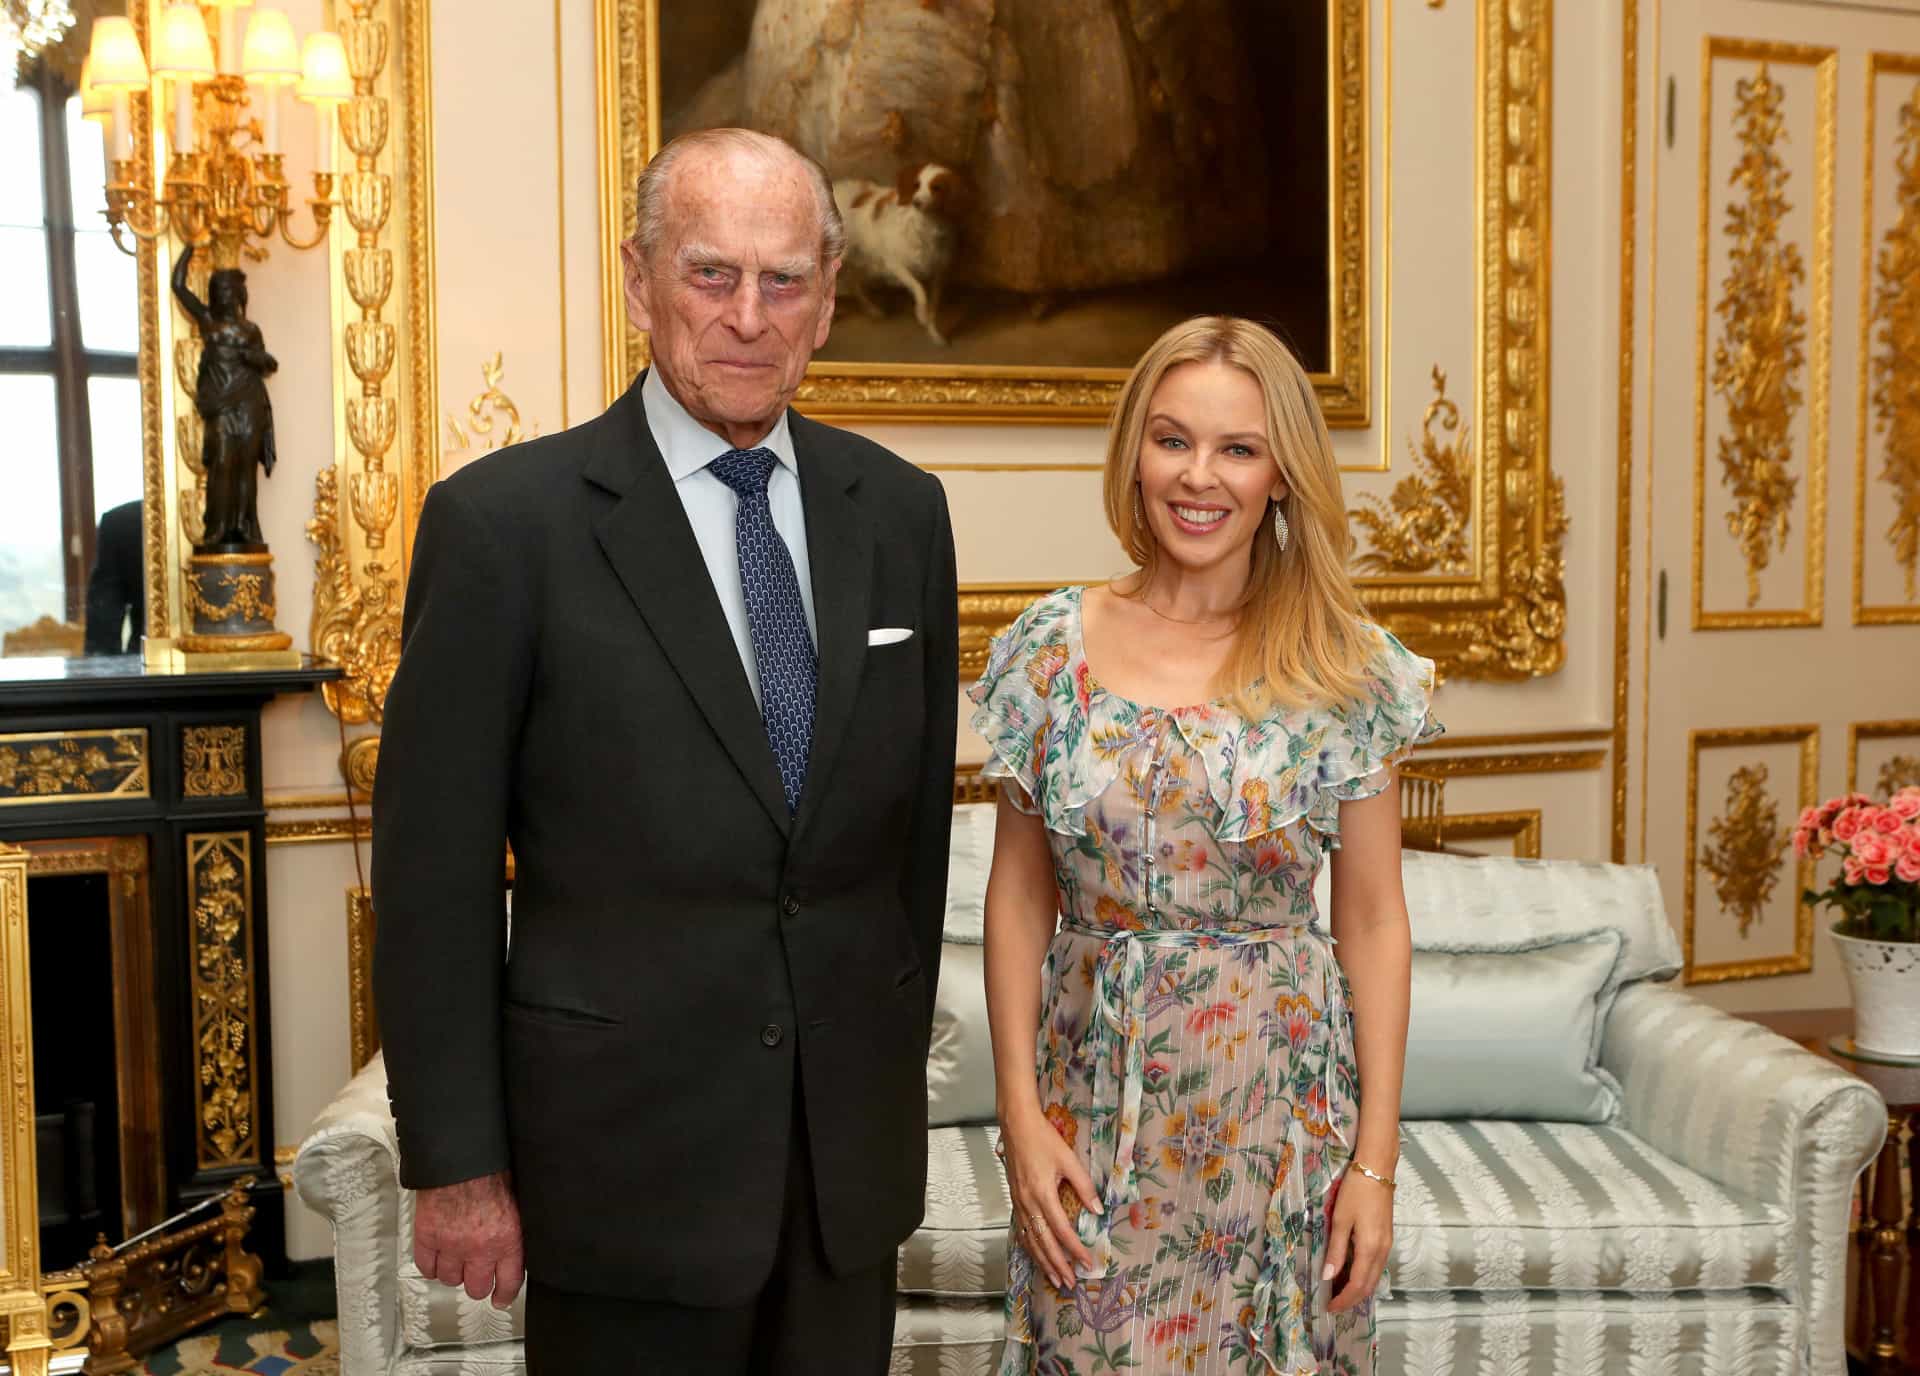 El duque de Edimburgo, jefe de la Sociedad Británico-australiana, entrega el premio de dicha institución en 2016 a Kylie Minogue, en el castillo de Windsor (Inglaterra).